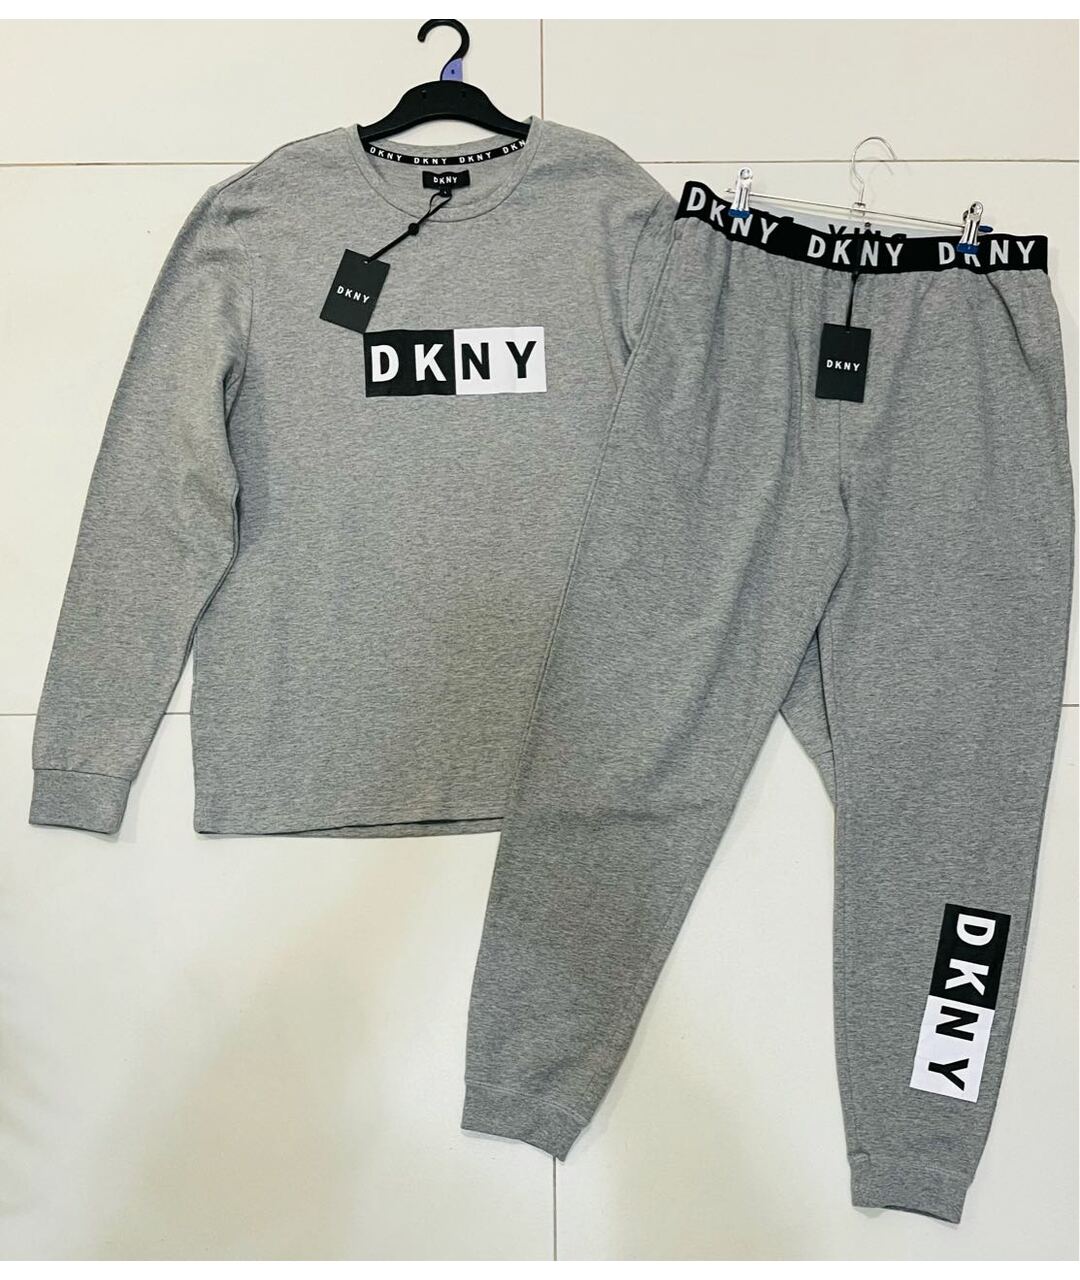 Спортивные костюмы DKNY для мужчин купить за 20267 руб, арт. 193942 –  Интернет-магазин Oskelly